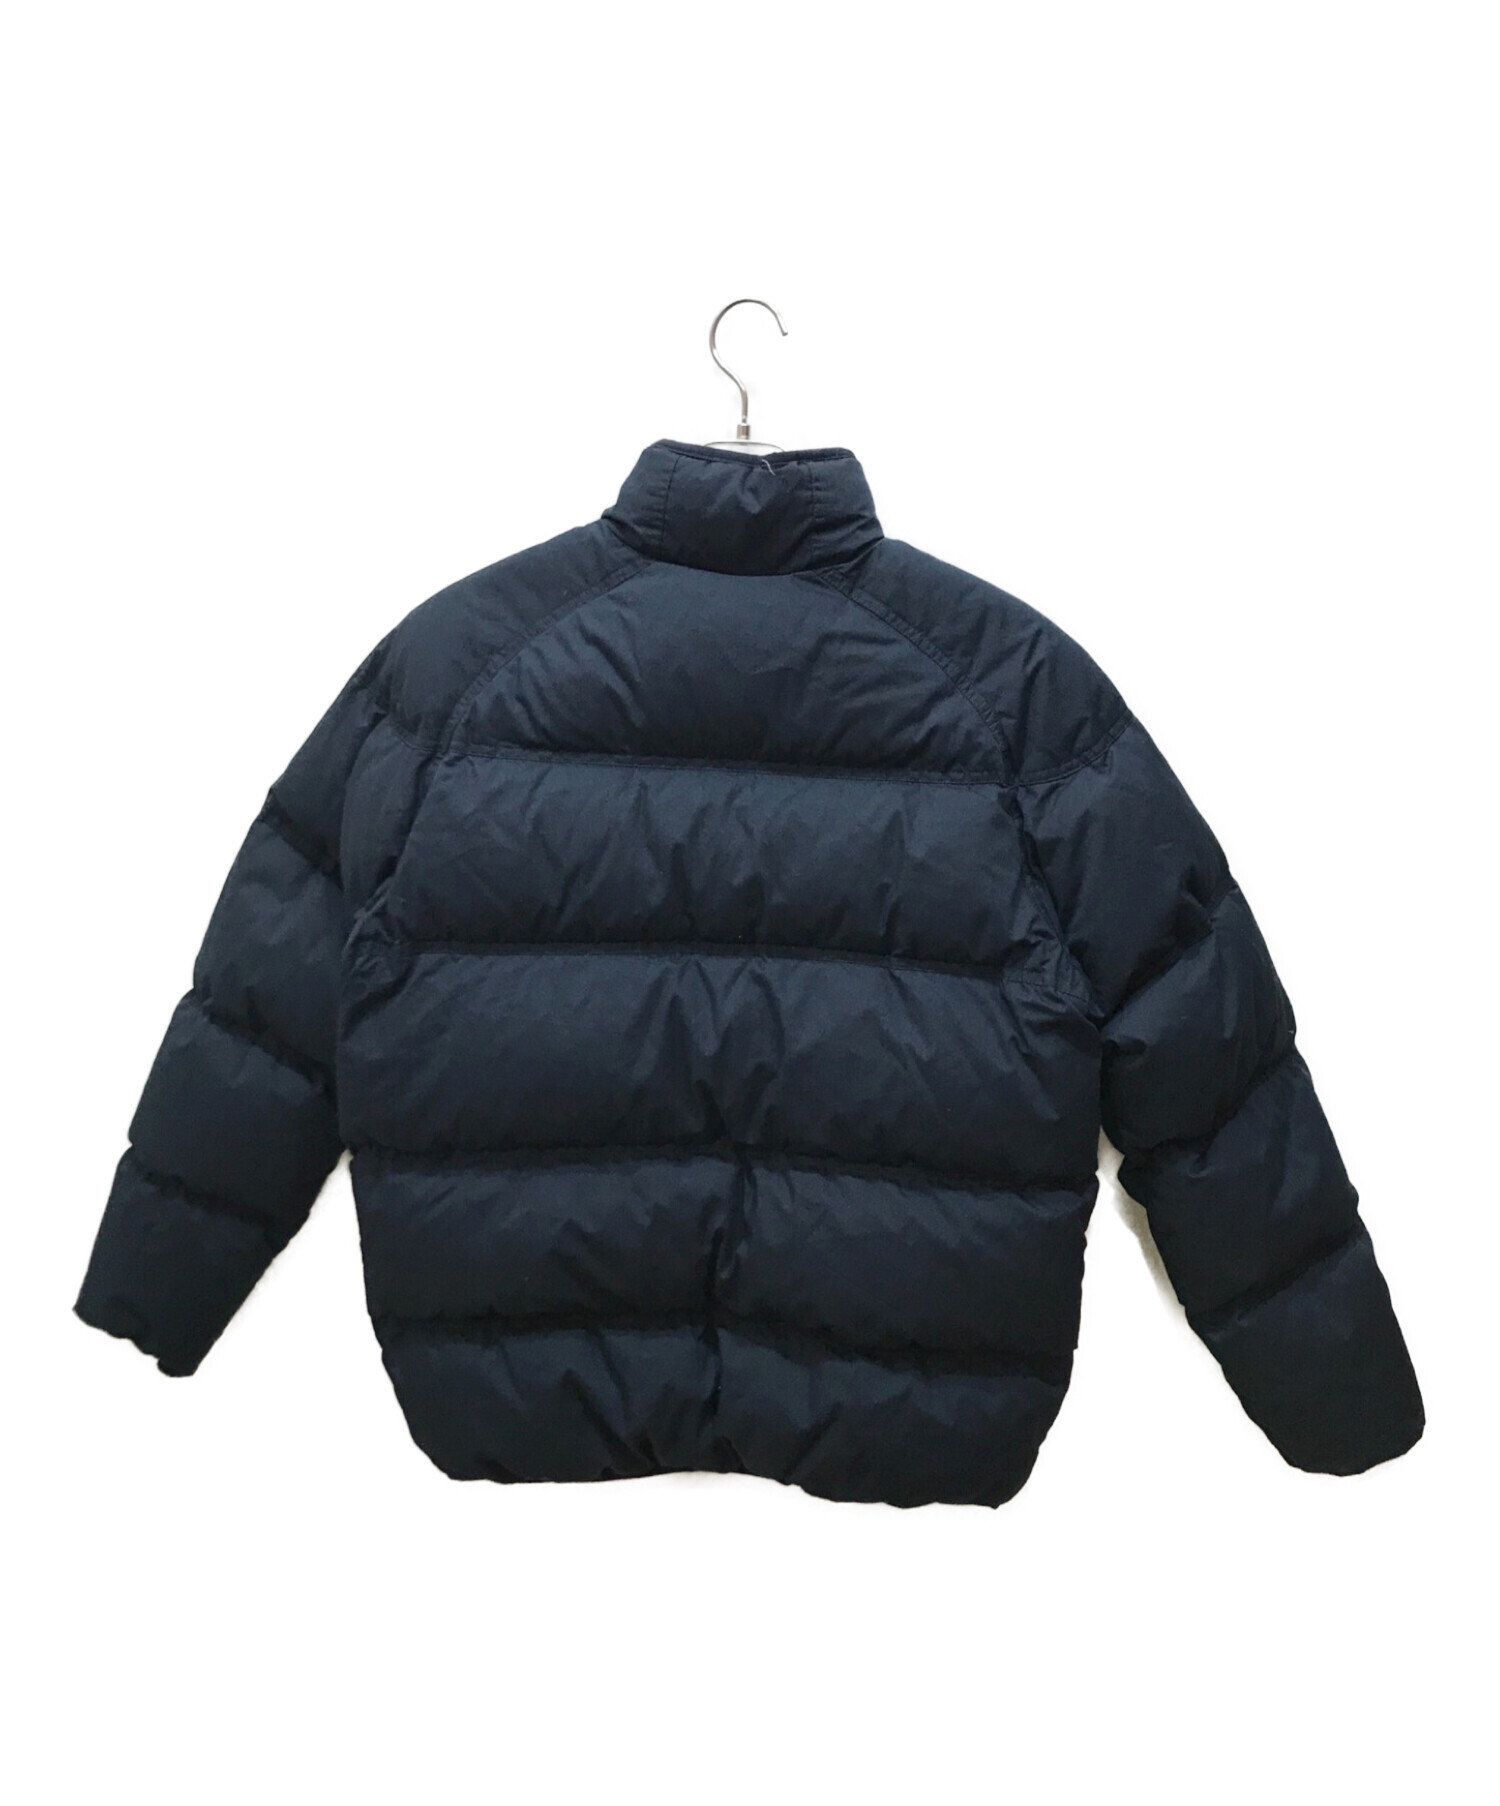 NIKE (ナイキ) リバーシブルダウンジャケット ブルー サイズ:XL